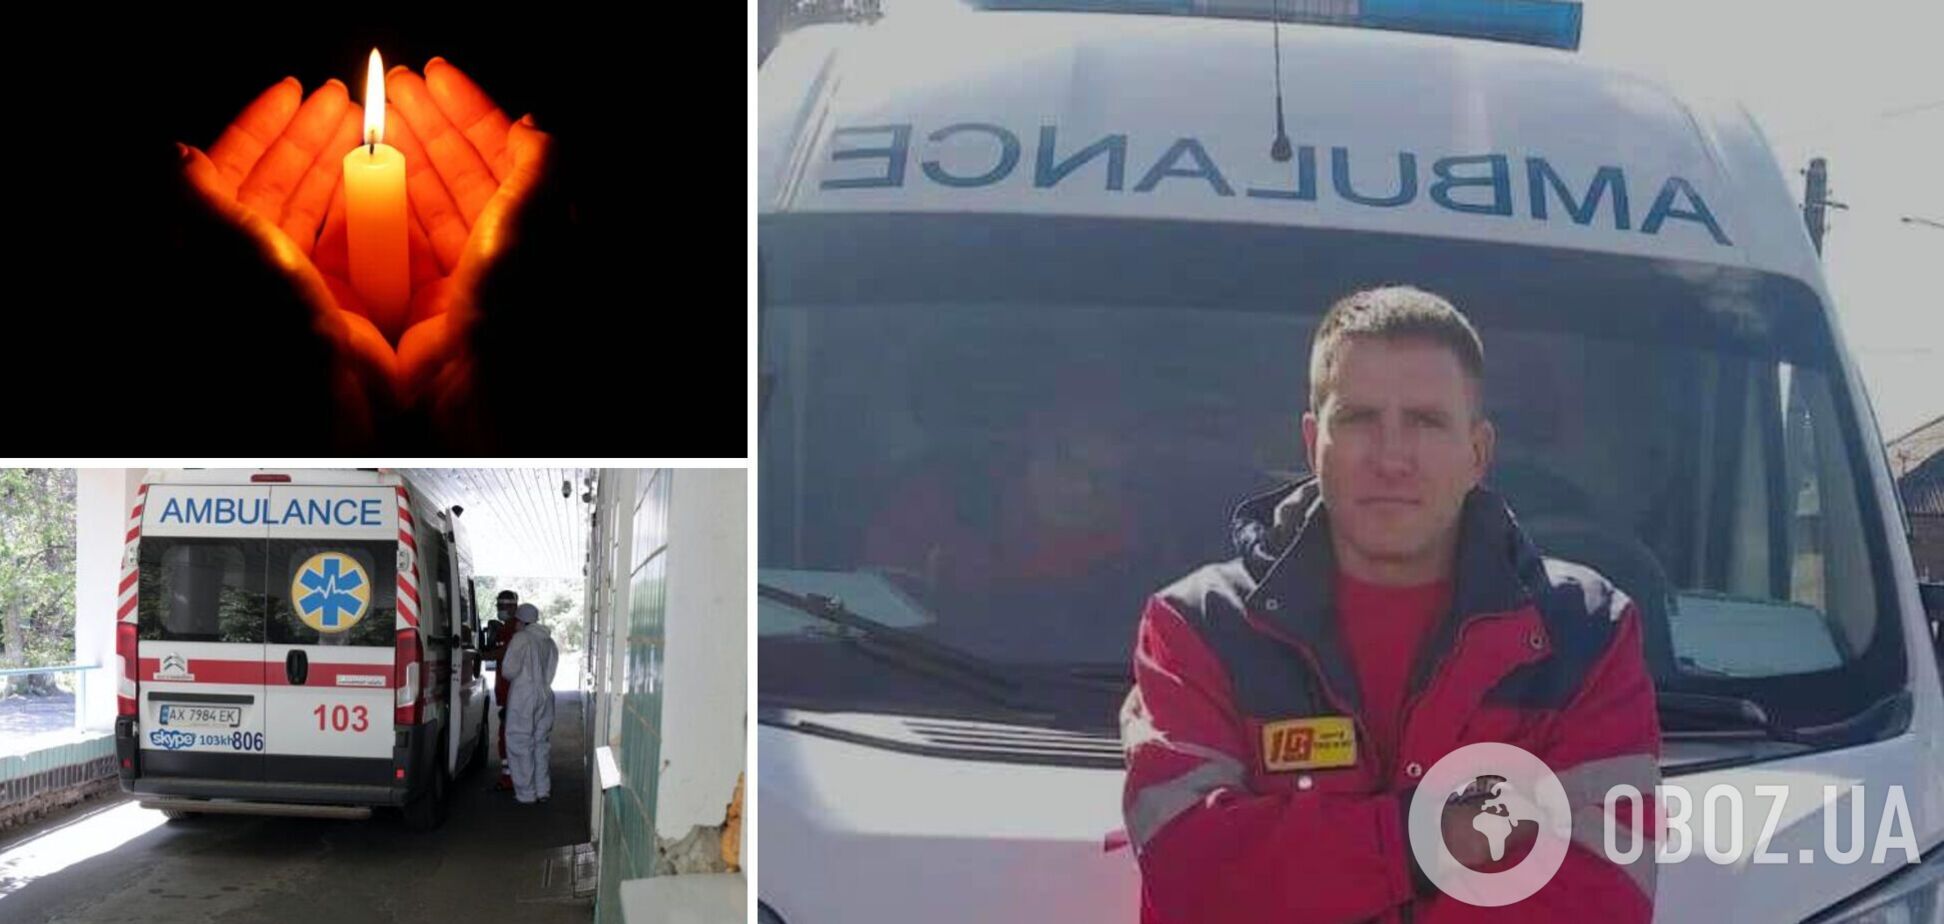 Осколок влетел прямо в сердце: в Харькове во время обстрела погиб водитель скорой